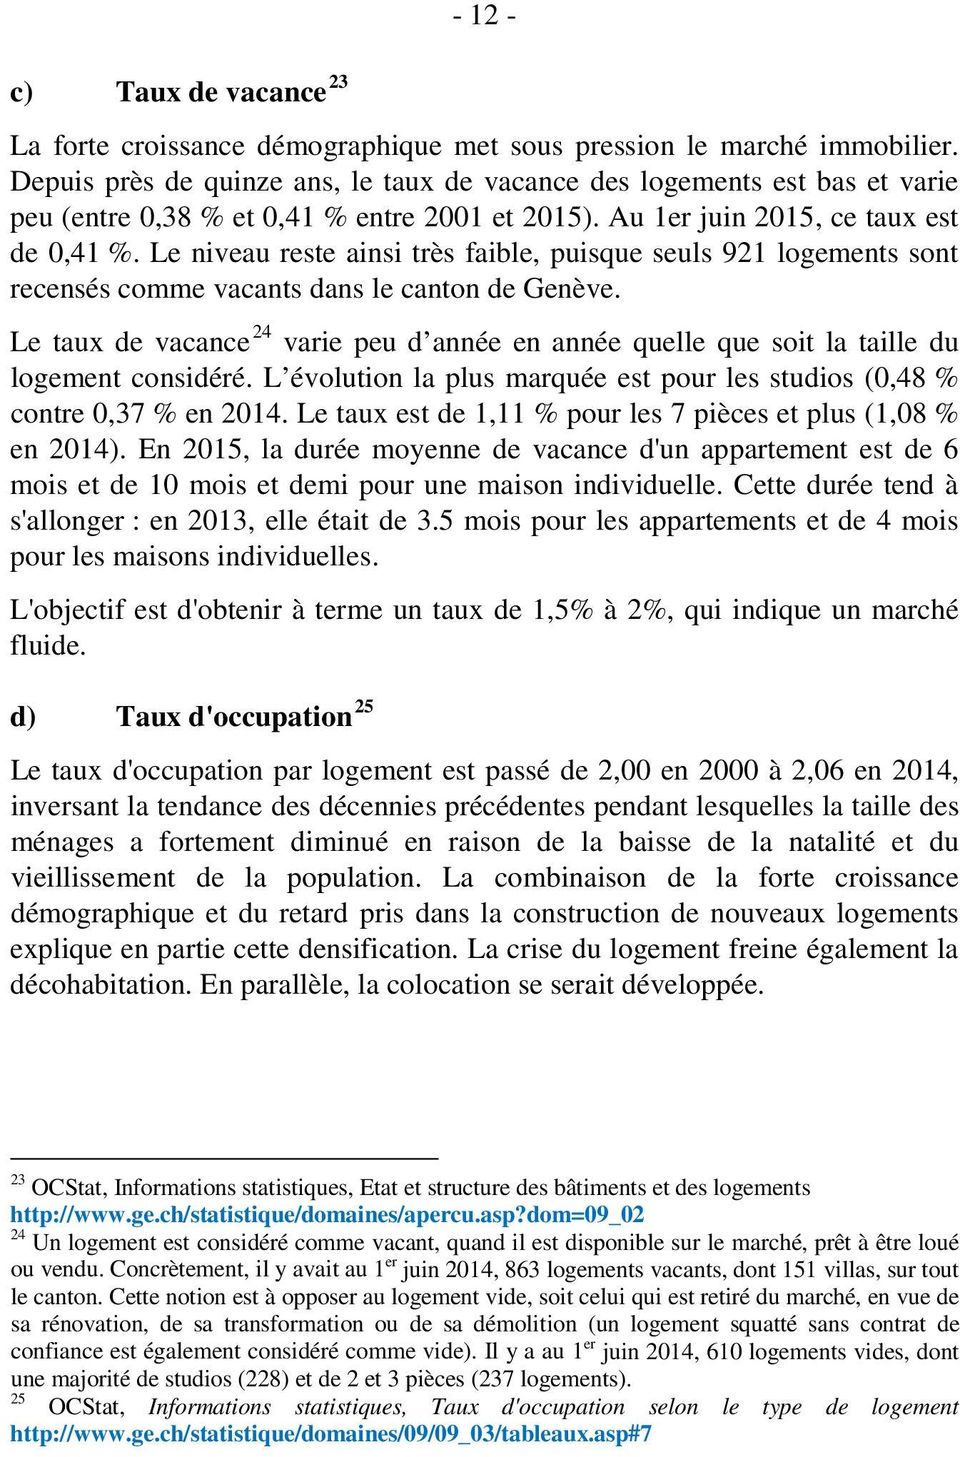 Le niveau reste ainsi très faible, puisque seuls 921 logements sont recensés comme vacants dans le canton de Genève.